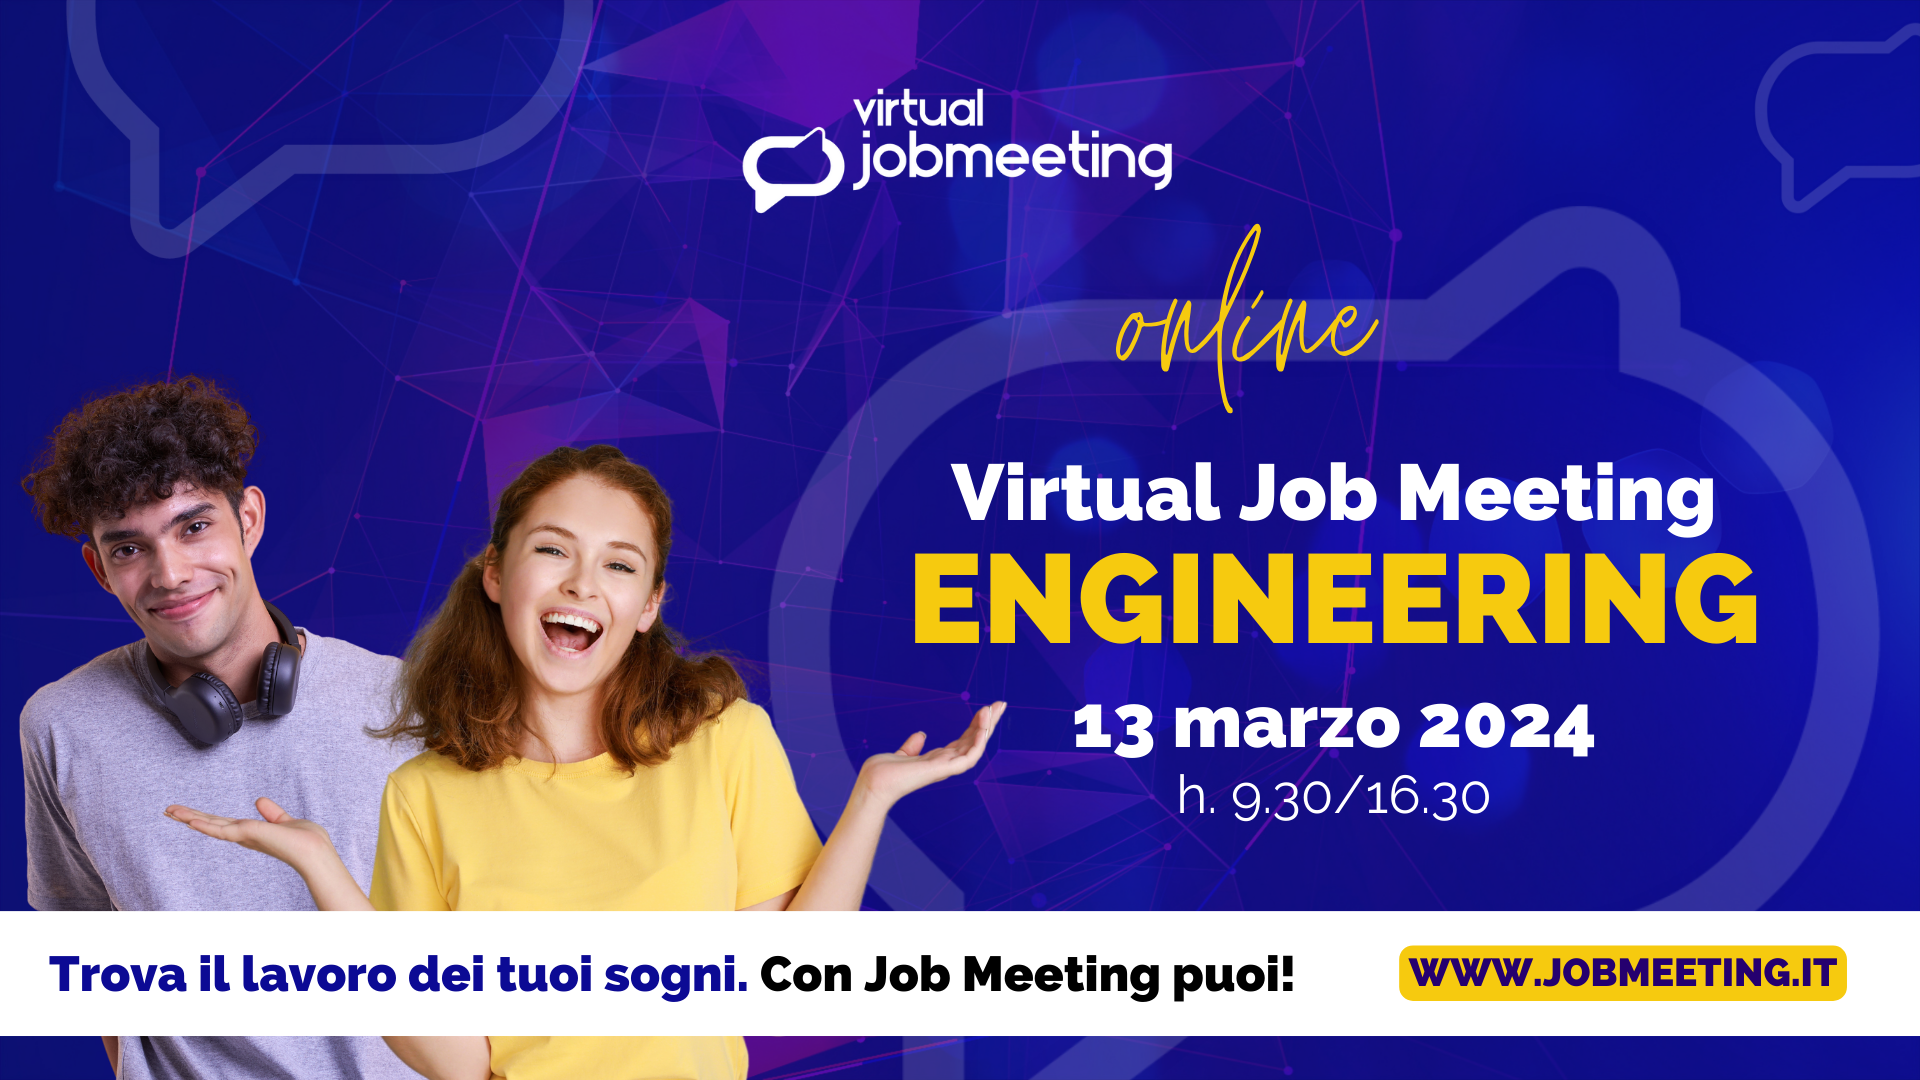 Il 13 marzo torna l’evento virtuale per i futuri ingegneri